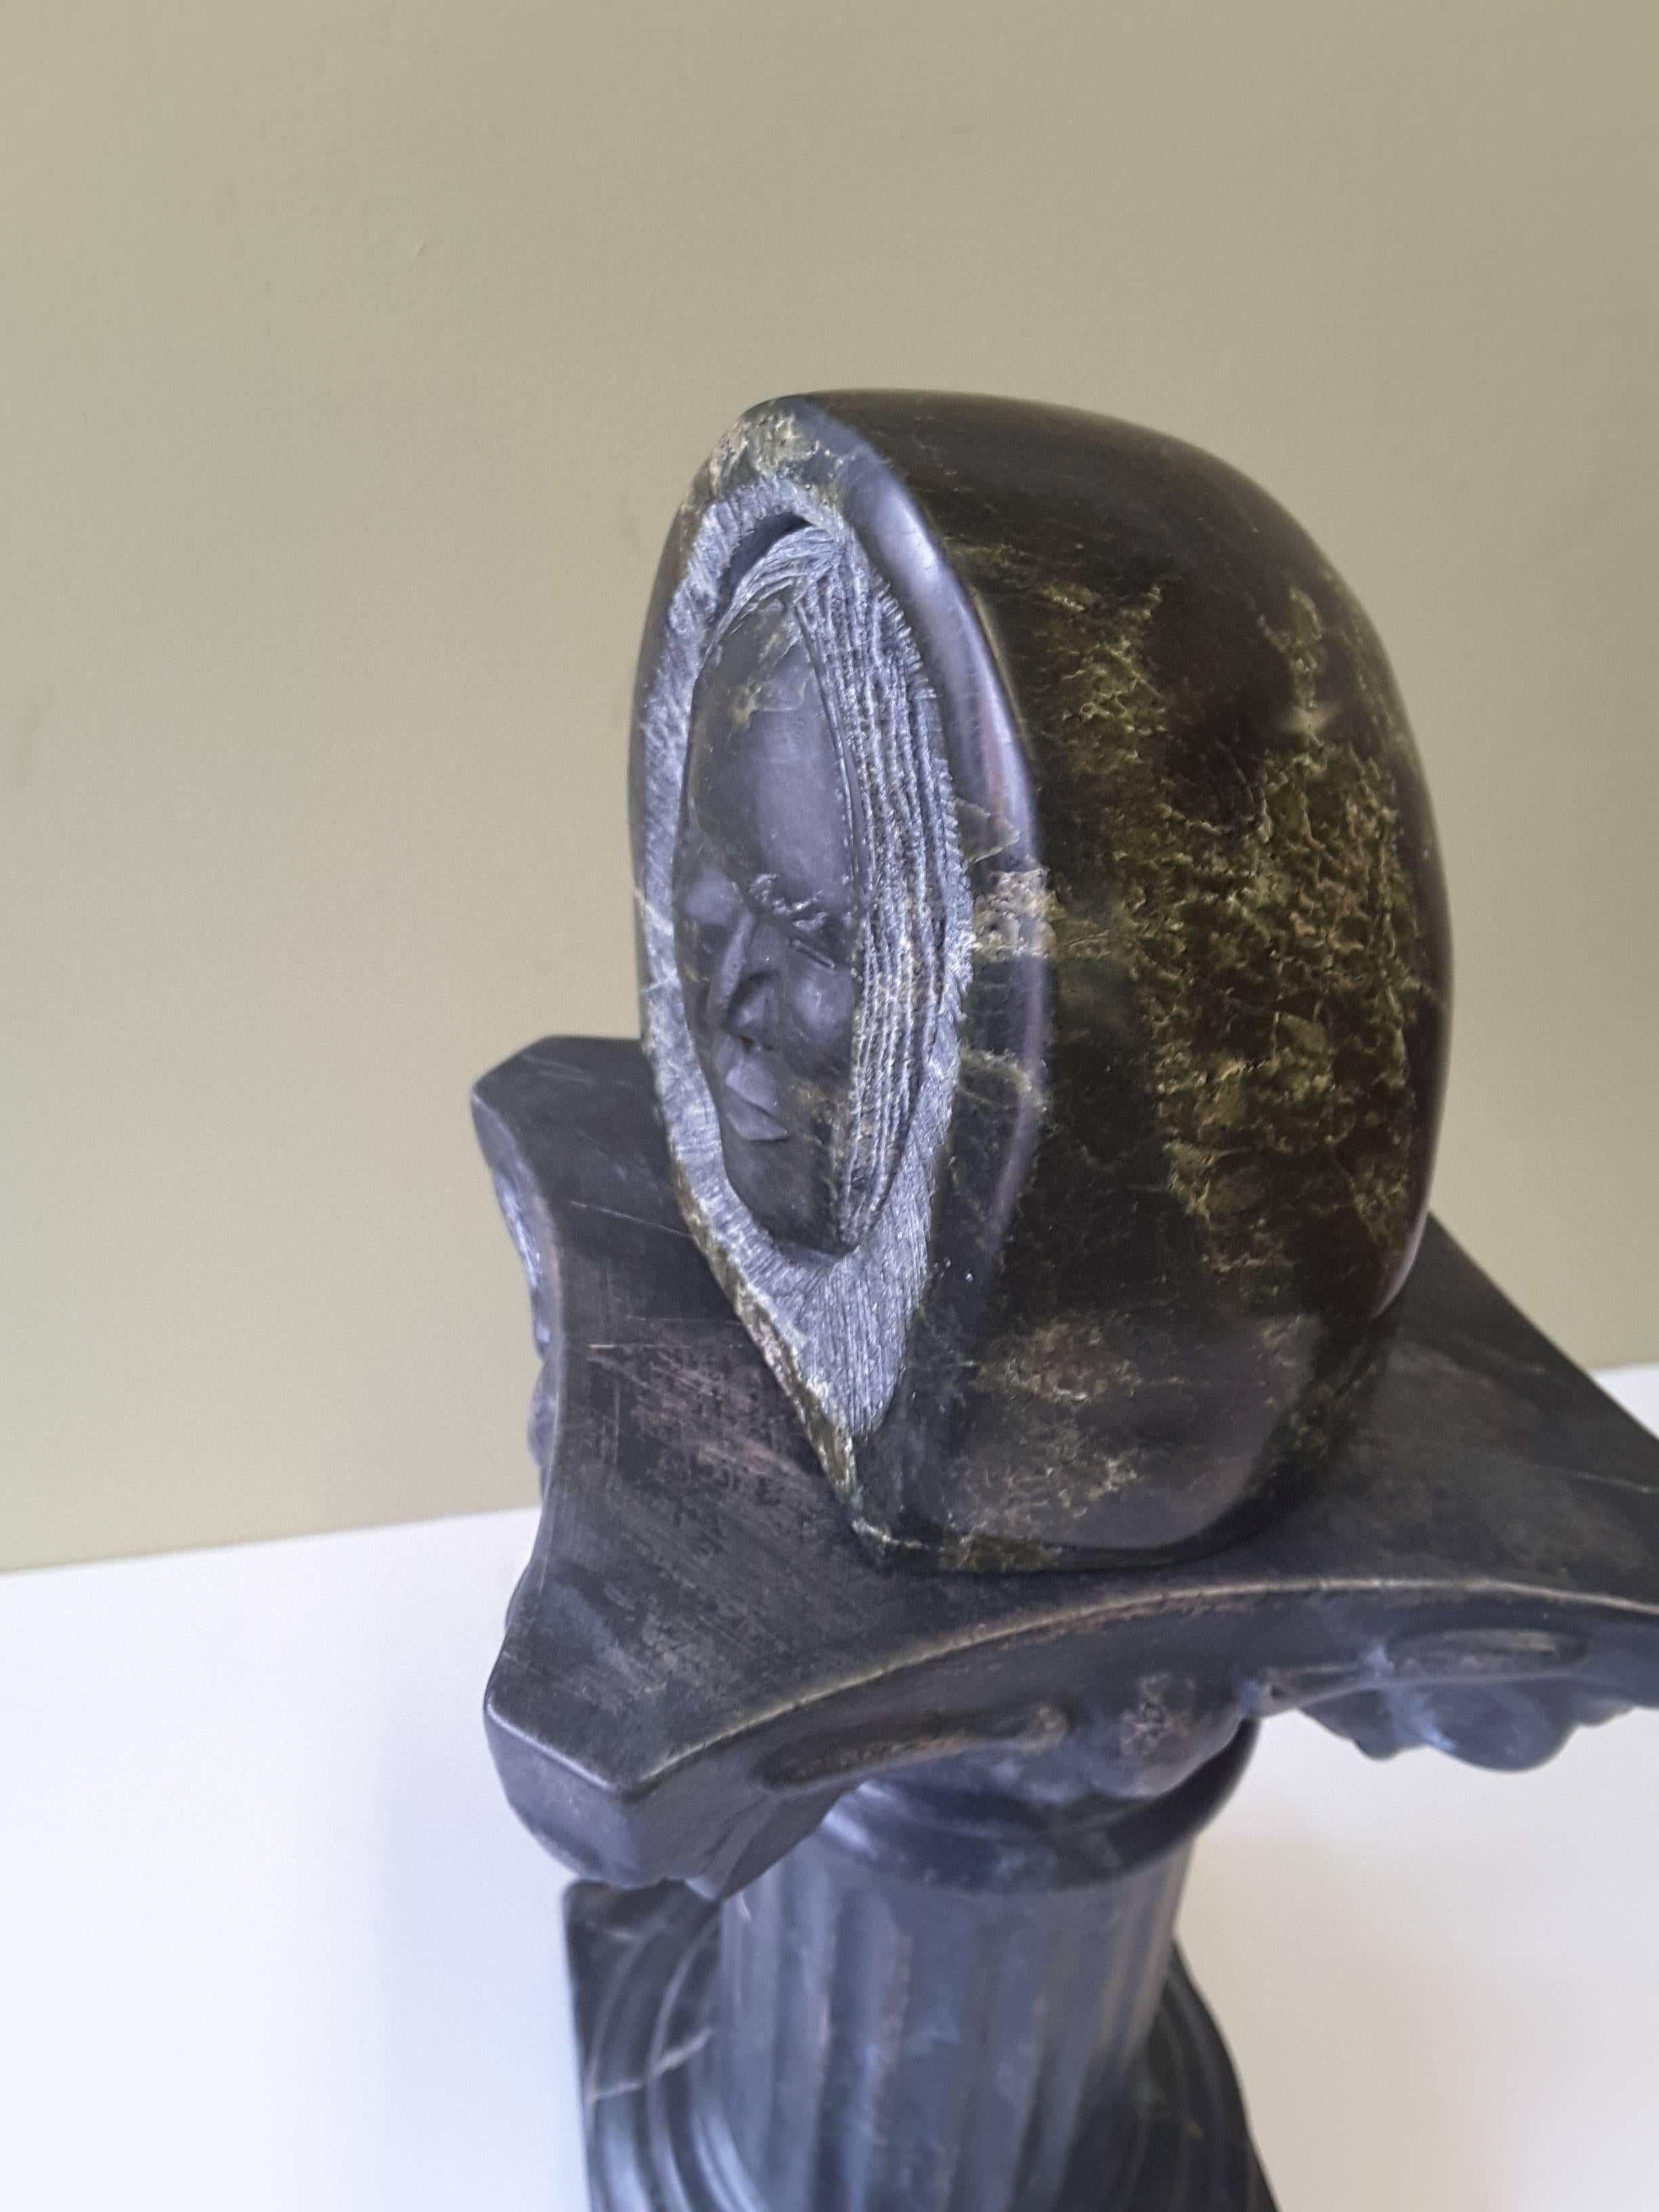 Sculpture inuit en stéatite représentant un visage enveloppé dans une capuche de parka. La tête est sculptée, de sorte qu'elle semble être mobile ou séparée de la capuche de parka. Le visage est bien détaillé et les yeux sont très bien faits. La